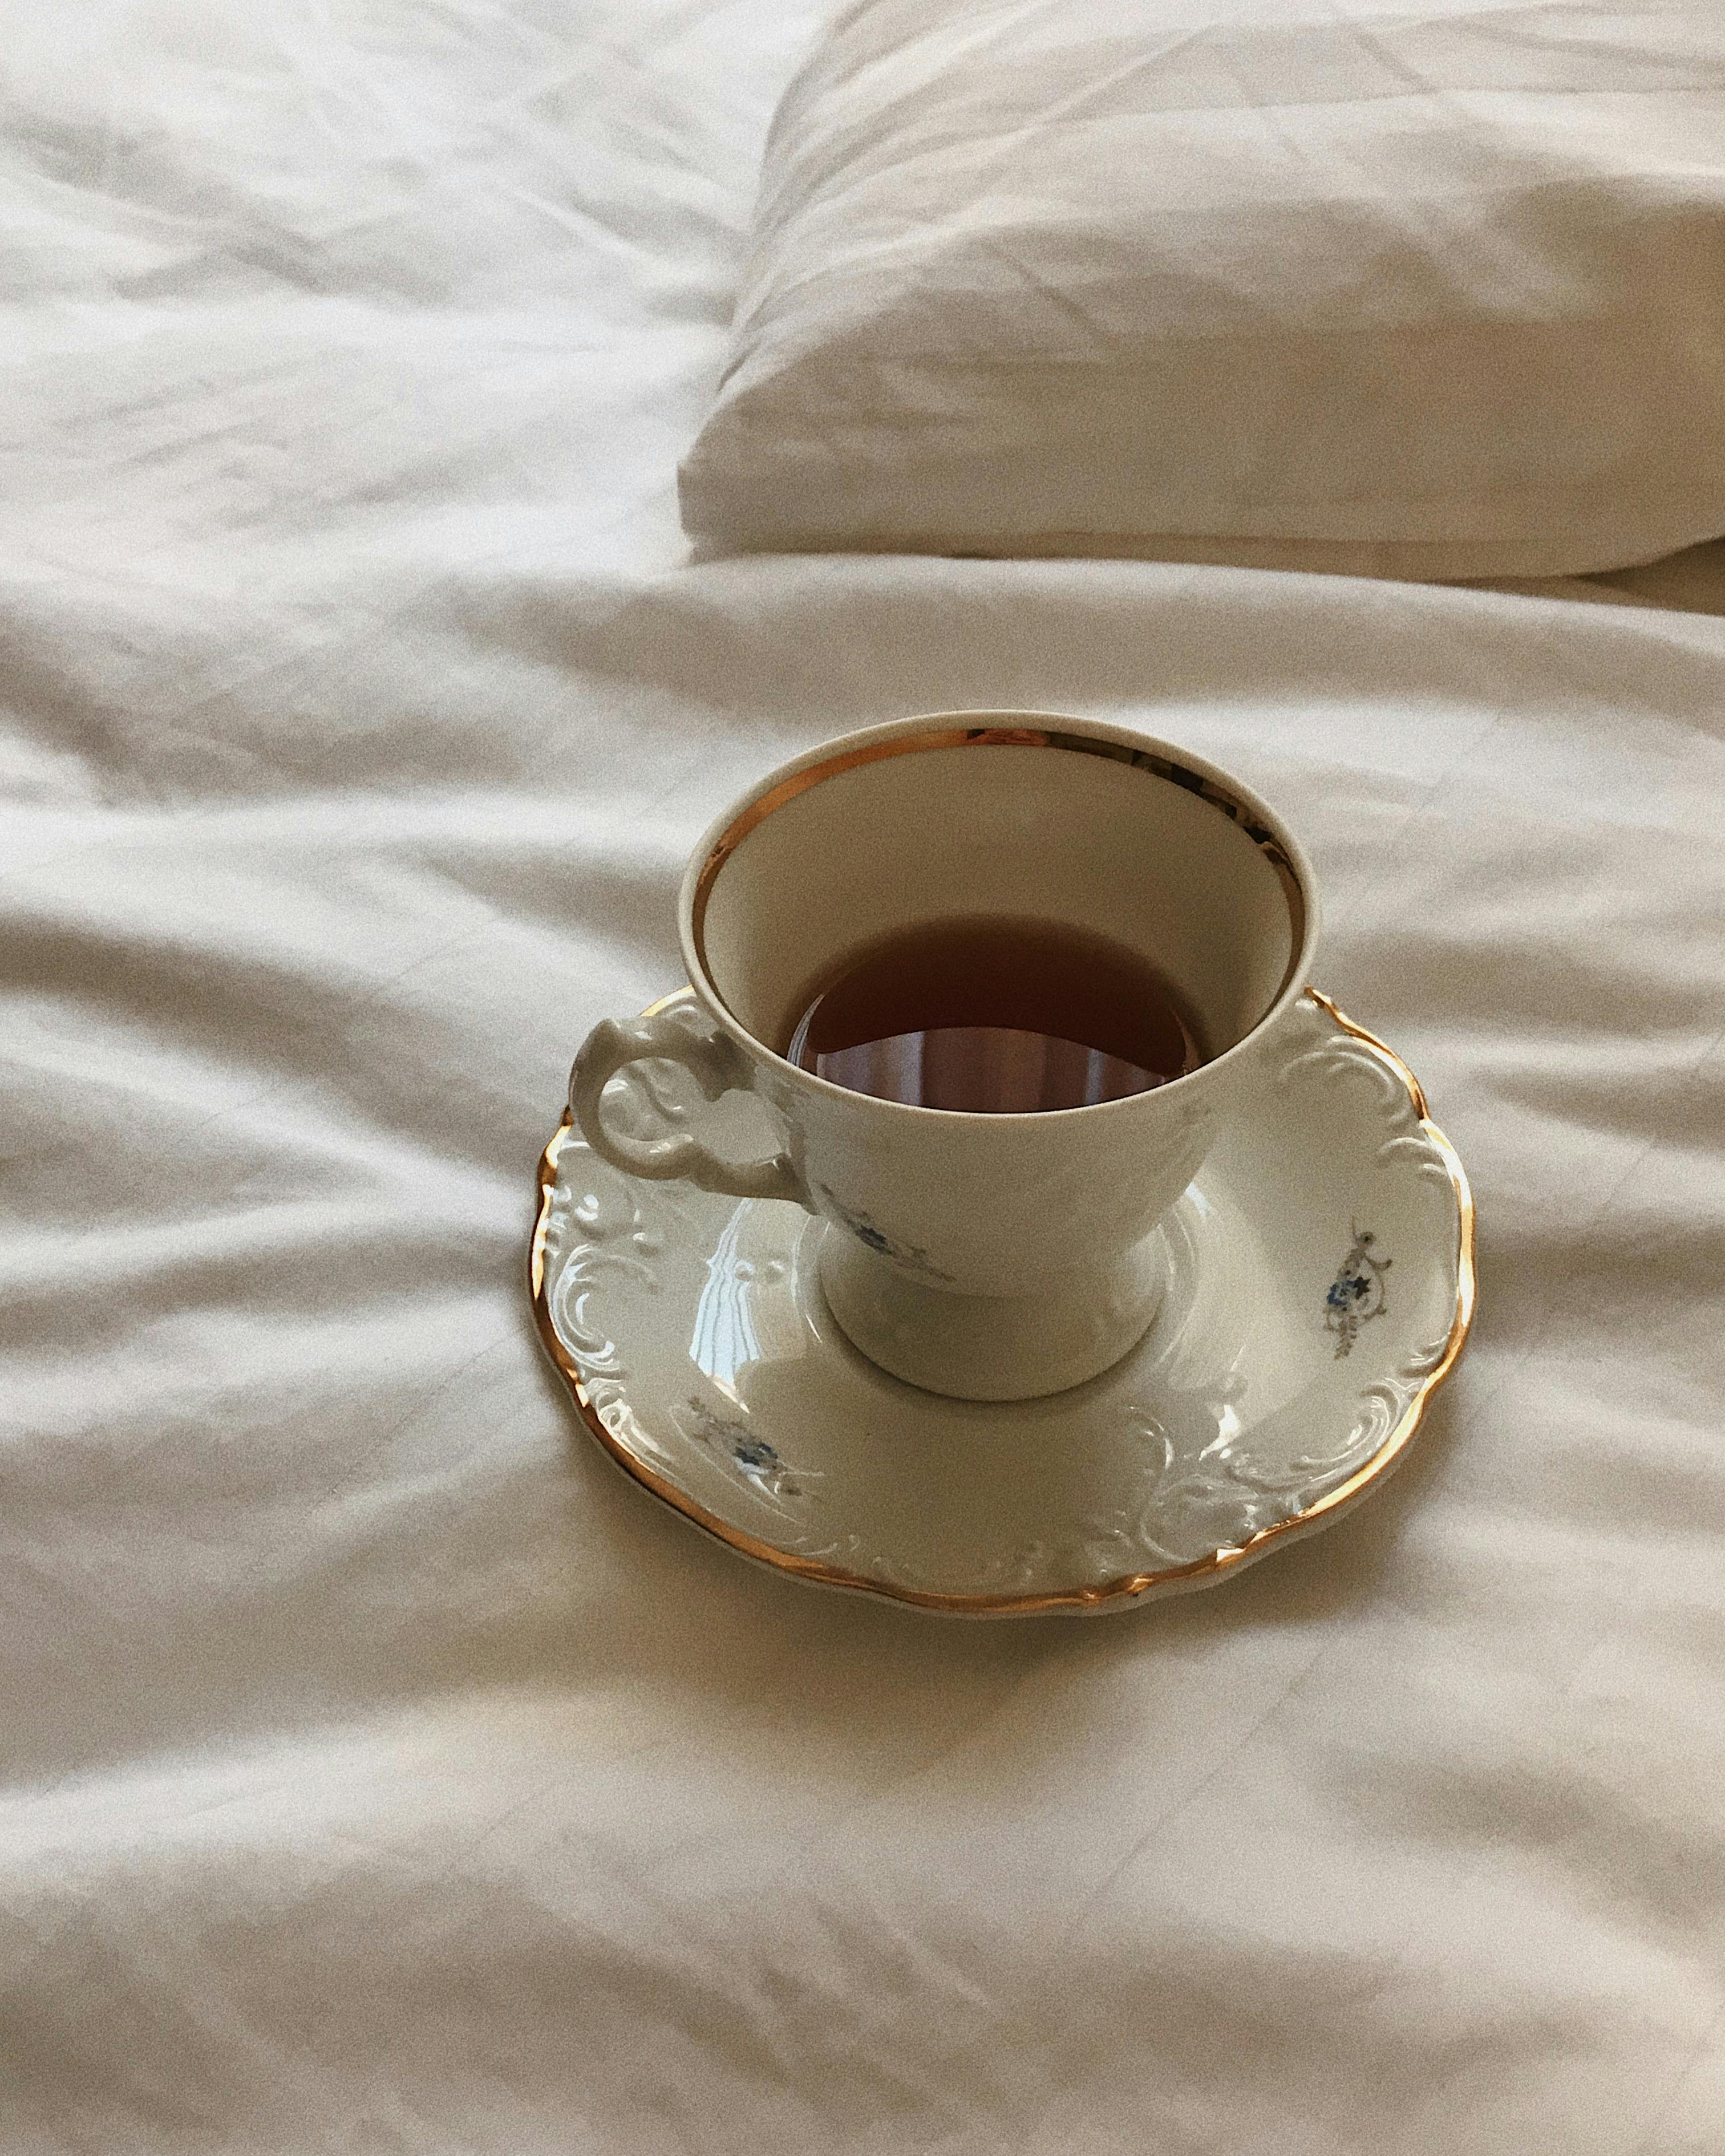 cup of tea in vintage porcelain on bed linen